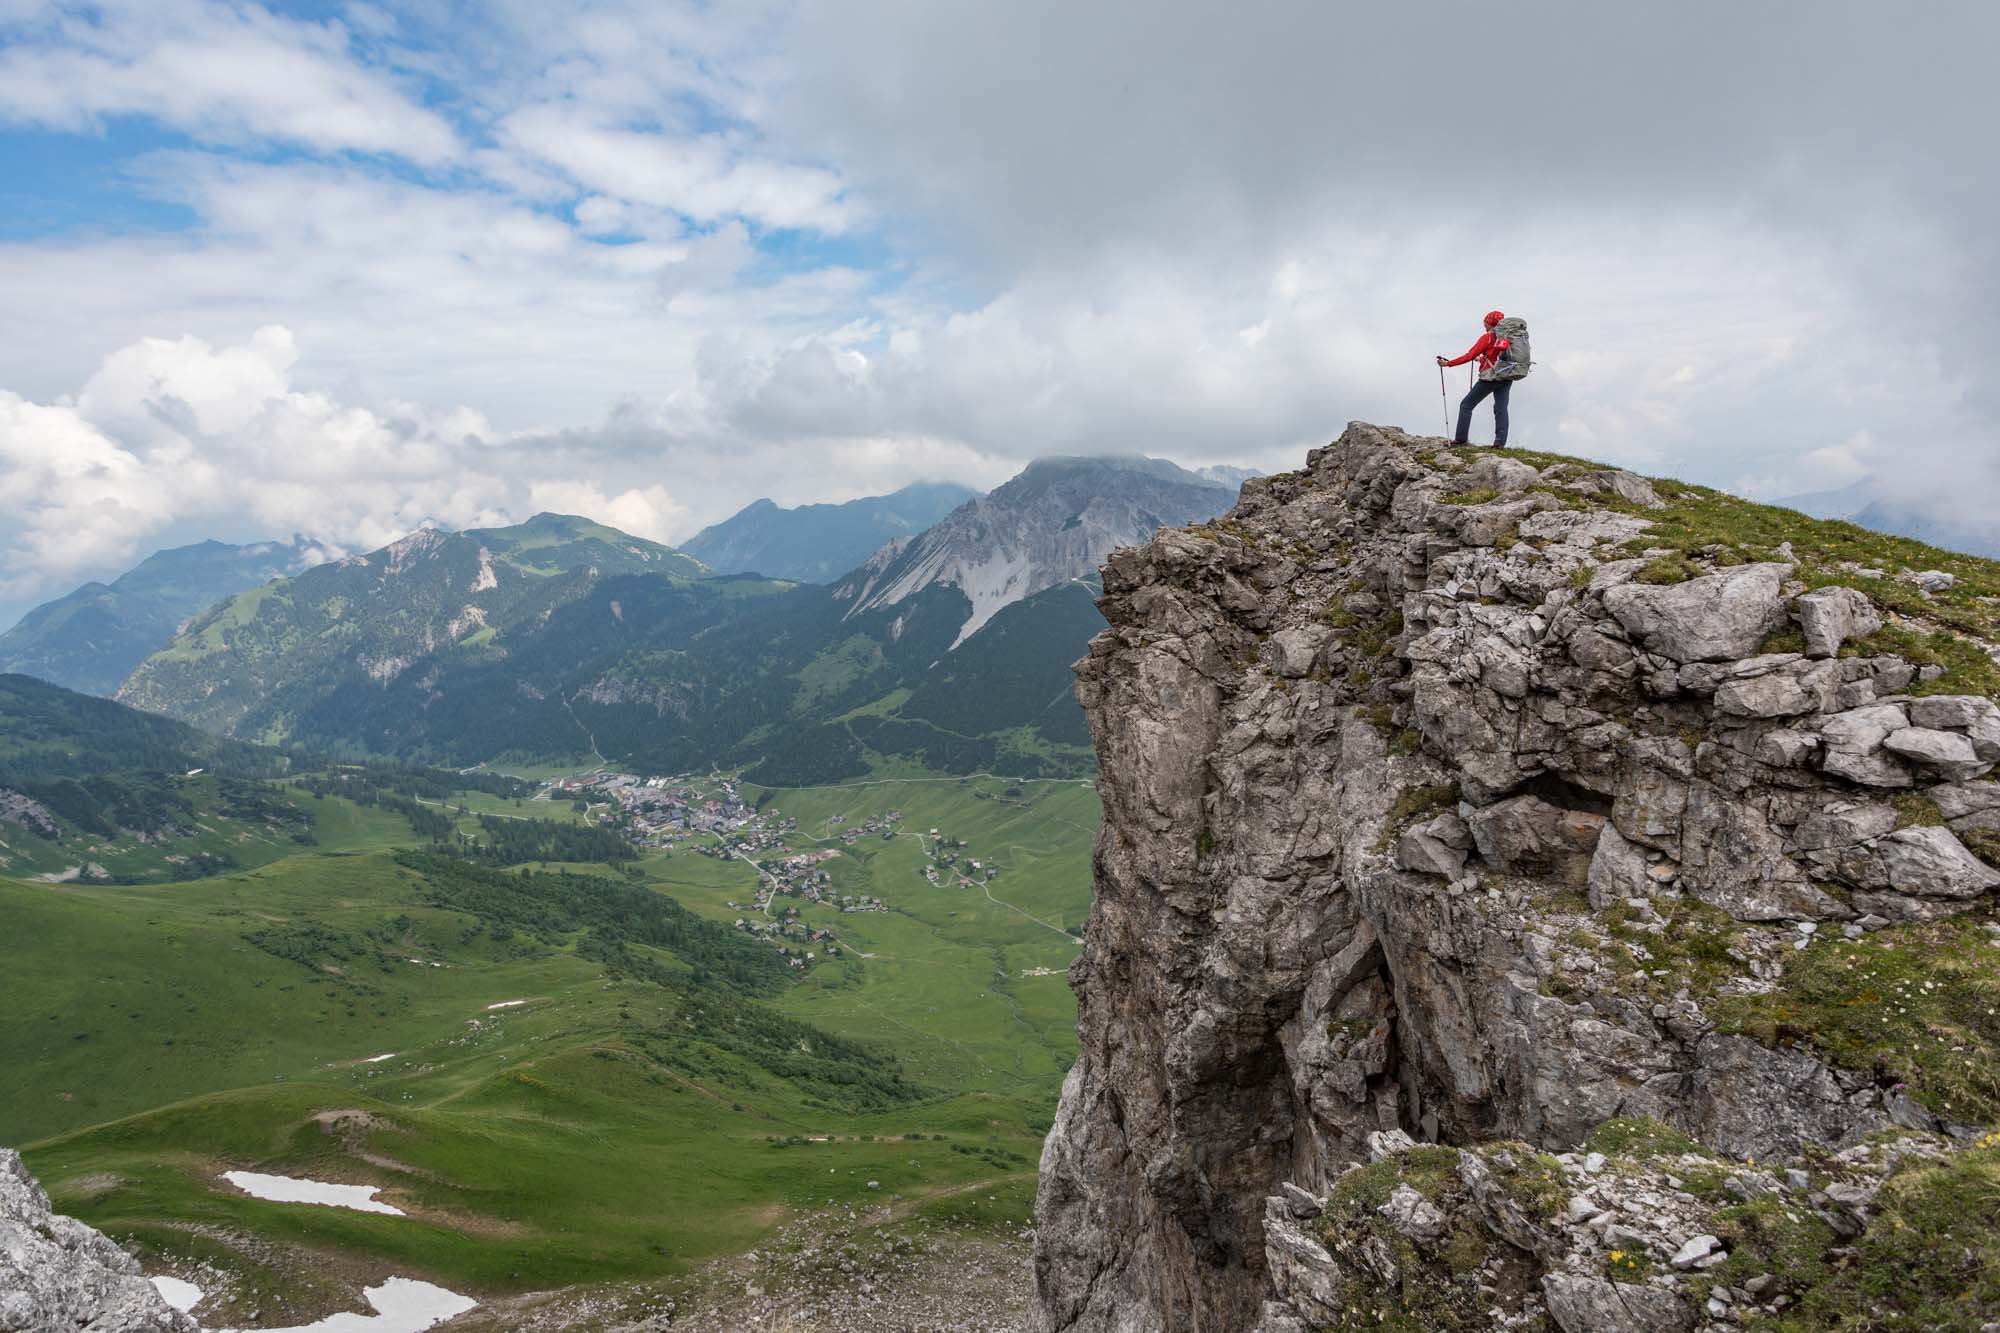 Mehrtages Hüttenwanderung durch die Liechtensteiner Alpen